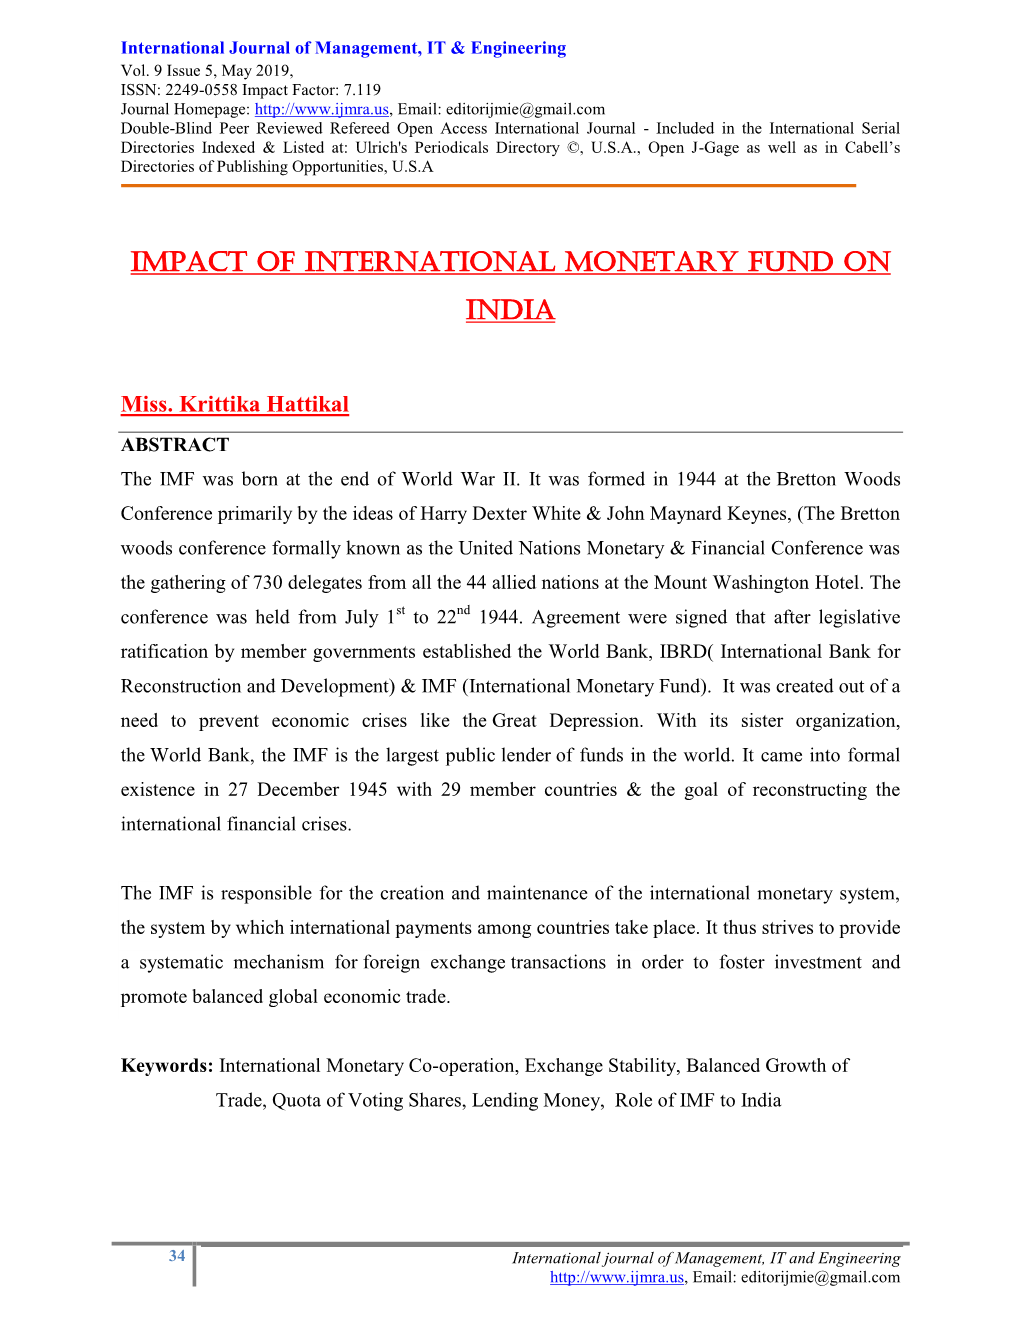 Impact of International Monetary Fund on India